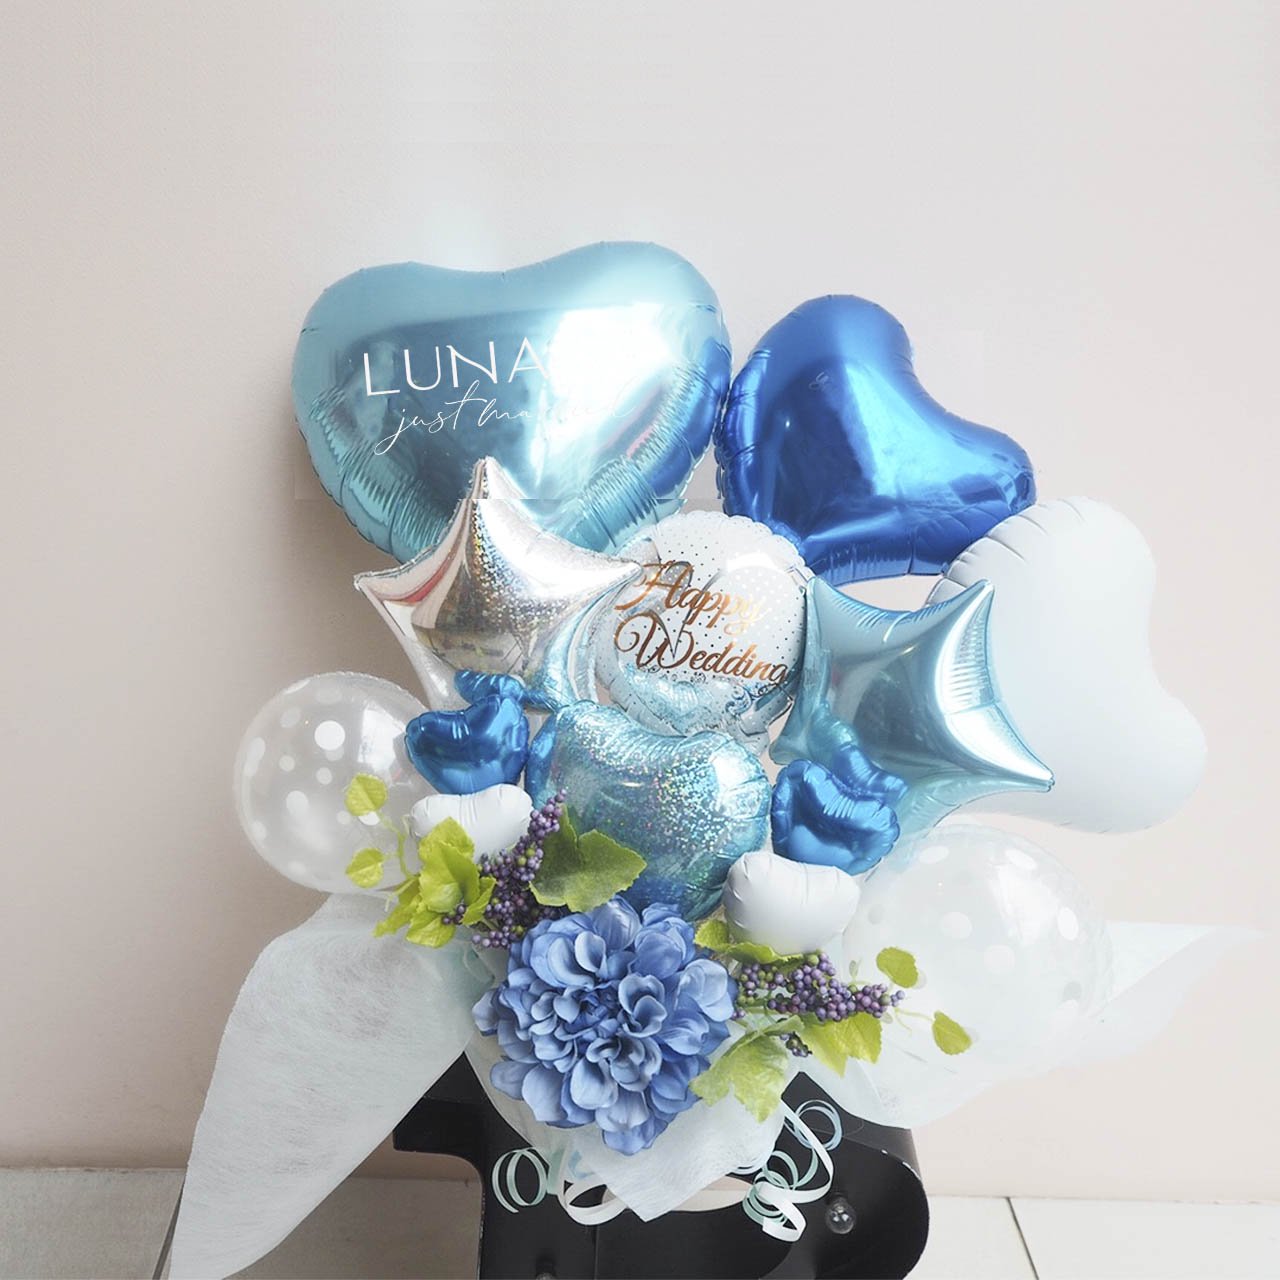 Lanikai Balloon Gift - Table top type - ラニカイバルーンギフト